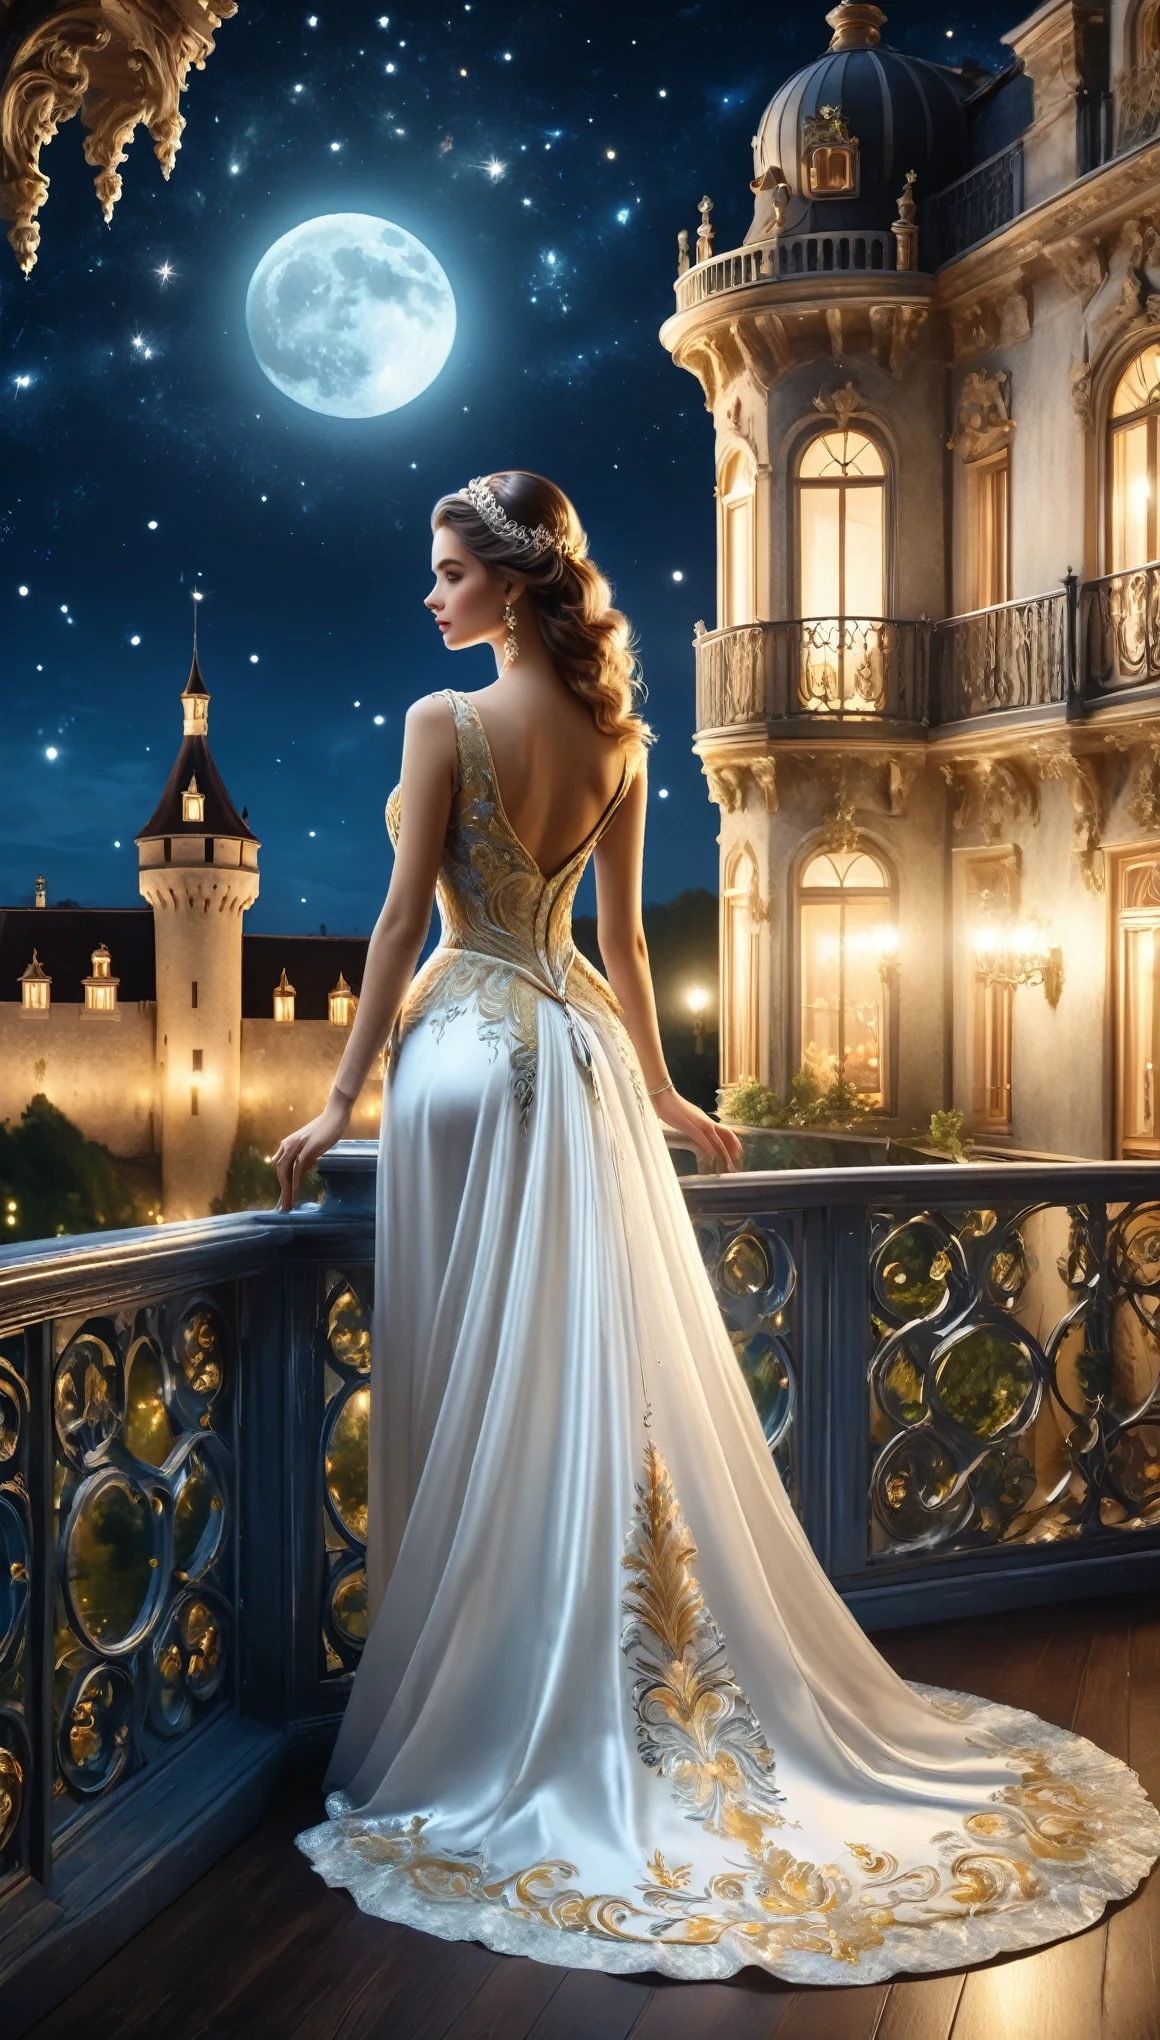 성에서 열리는 야간 댄스 파티 장면,A 아름다운 woman in a white evening dress stands on the balcony,여자가 밖을 보고 있다,You can see the lights of the castle town at night and the 아름다운 night sky from the balcony.,춤은 로코코 스타일의 방에서 열립니다..,우아한, 우아한, 그리고 차분한 분위기로,발코니에 서 있는 여자의 뒷모습을 그려주세요,포토리얼,아름다운,야경,구조적으로 올바른,해부학적으로 정확하다,부서지다,여자가 입는 이브닝 드레스가 정말 고급스러워요,은실과 금실로 수놓은,부조리,젠탱글,복잡한 세부 사항,다양한 색상,삽화,표현,(걸작:1.3),(최상의 품질:1.4),(매우 상세한:1.5),높은 해상도,매우 상세한,유니티 8K 벽지